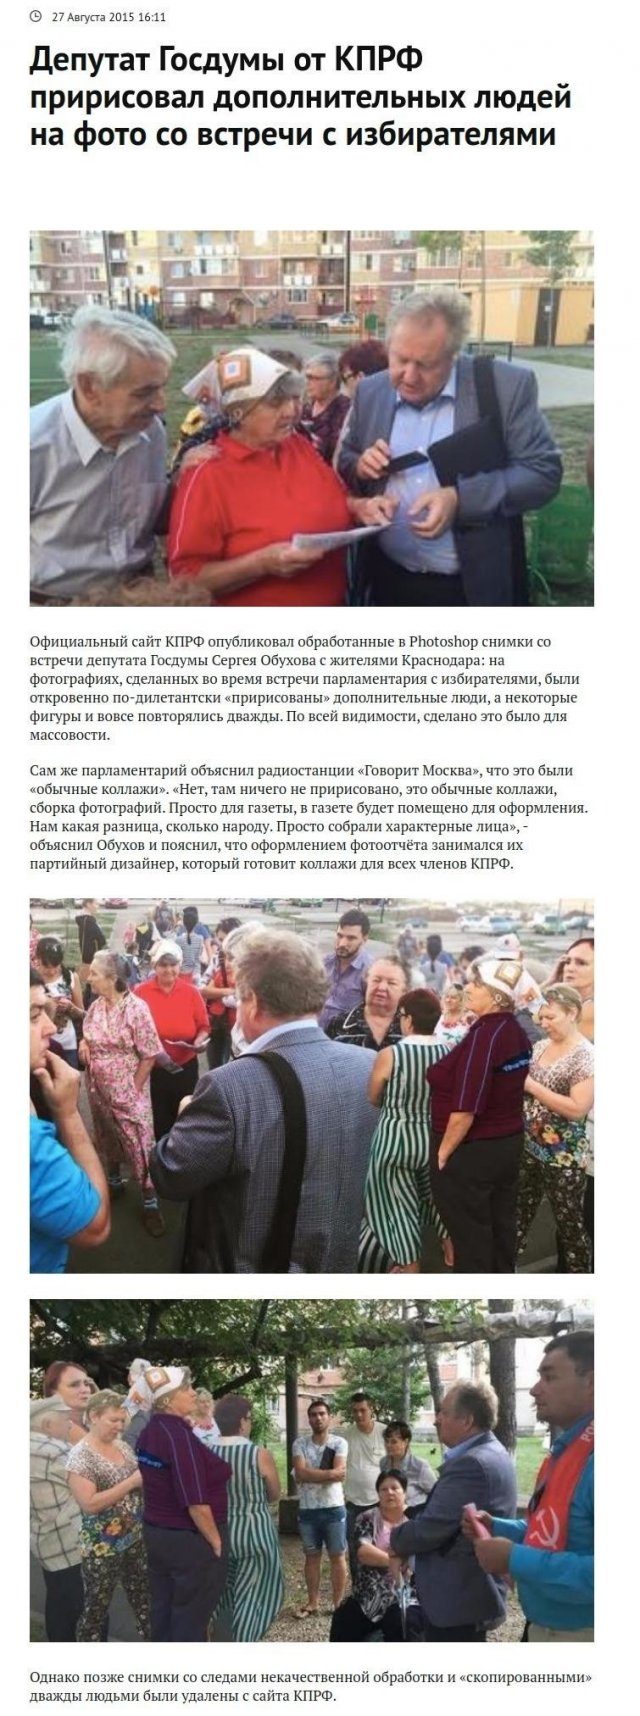 Российские новости, связанные с депутатами